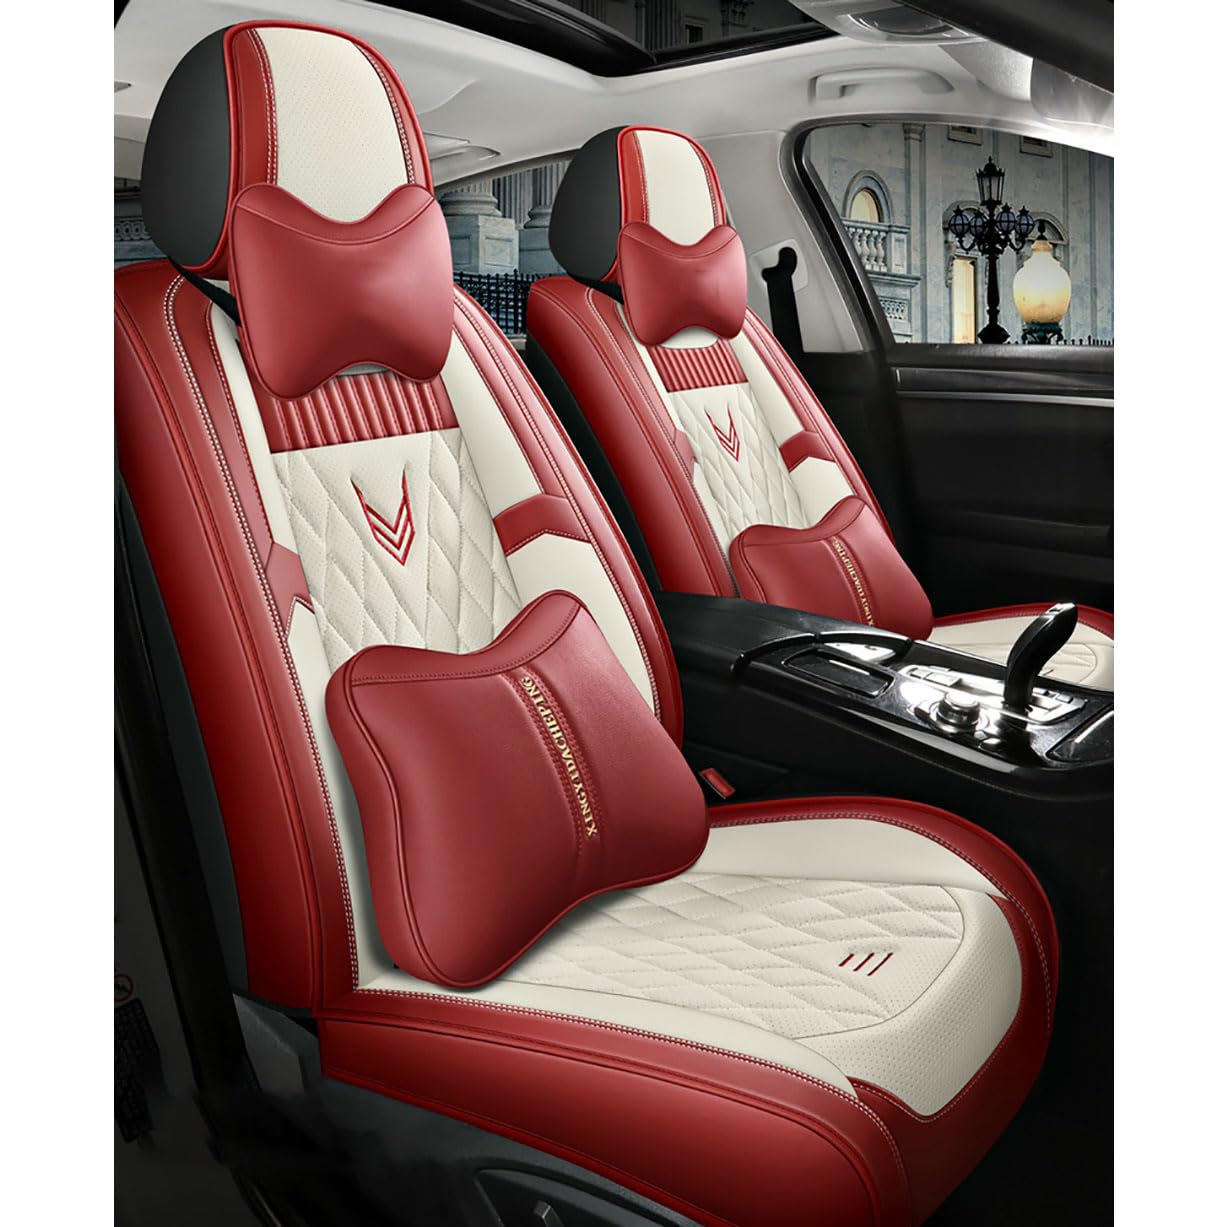 UPIKIT Auto Leder Vollständige Abdeckung Sitzauflagen Sitzbezügesets kompatibel mit für Mercedes Benz GLE W166 GLE 300d 320 400 350d 450 4MATIC 2015-2019, with Pillow- F-beige-red von UPIKIT